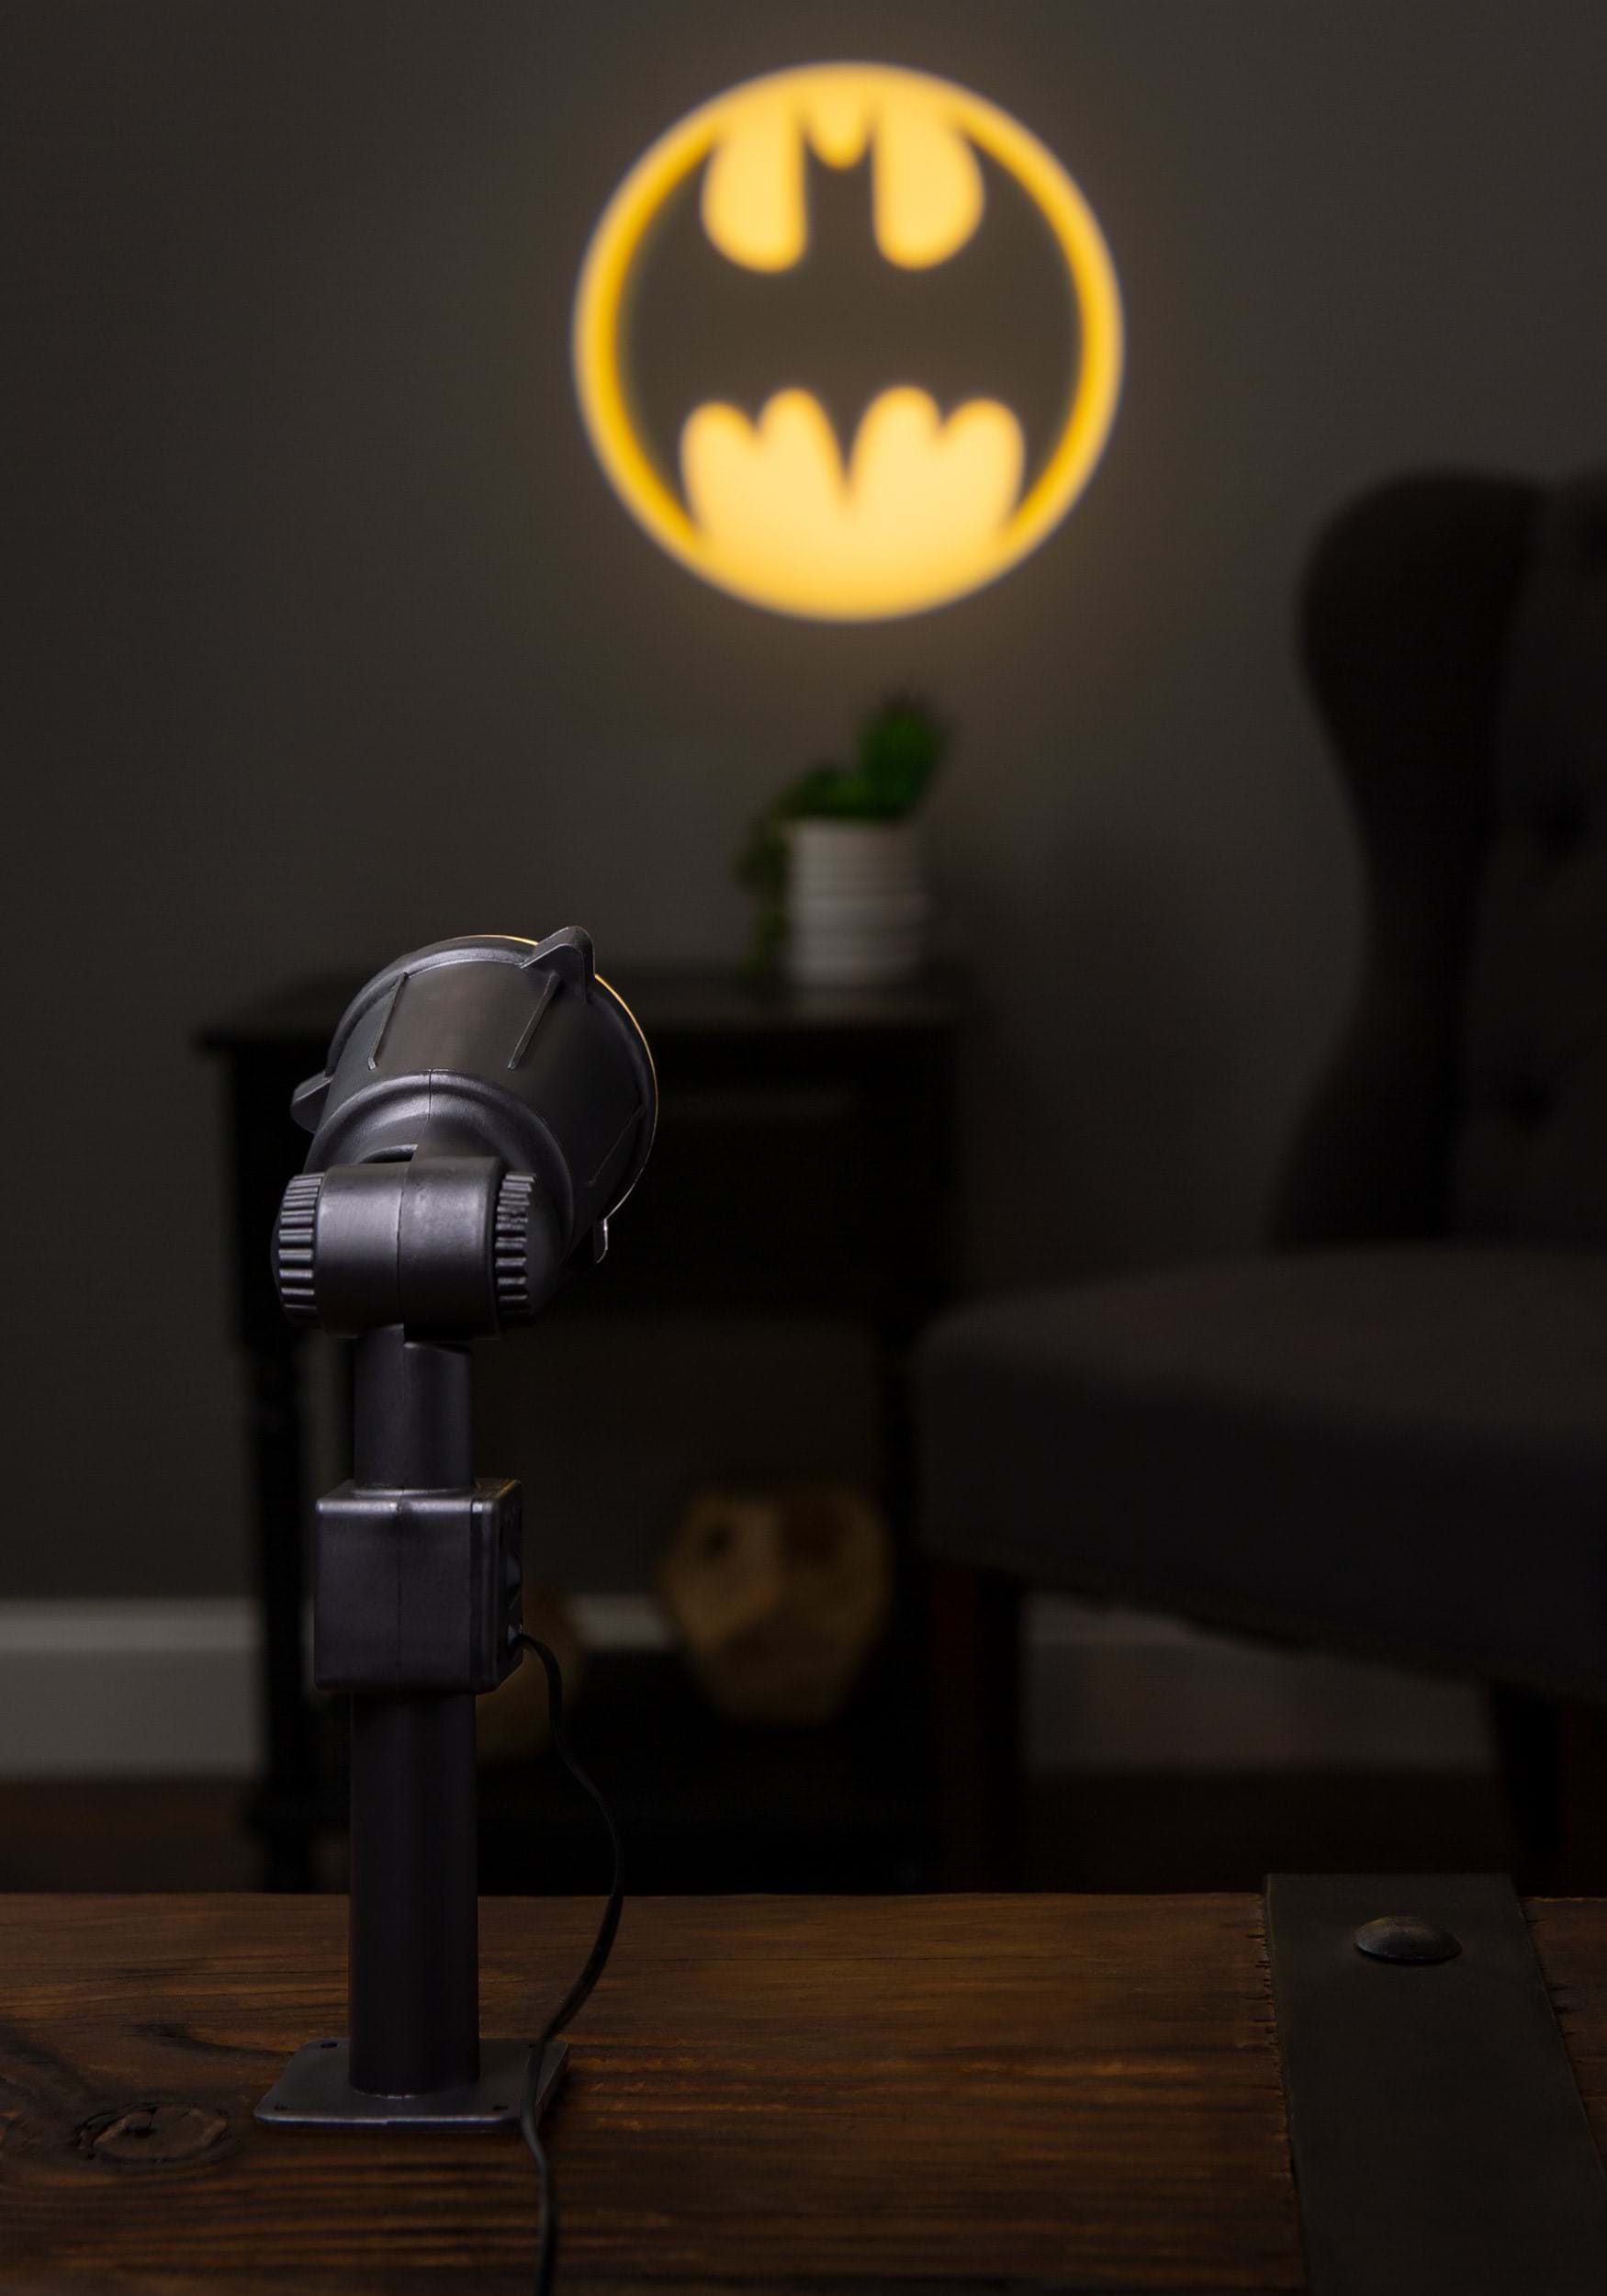 14 DC Comics Batman Bat Signal Projector